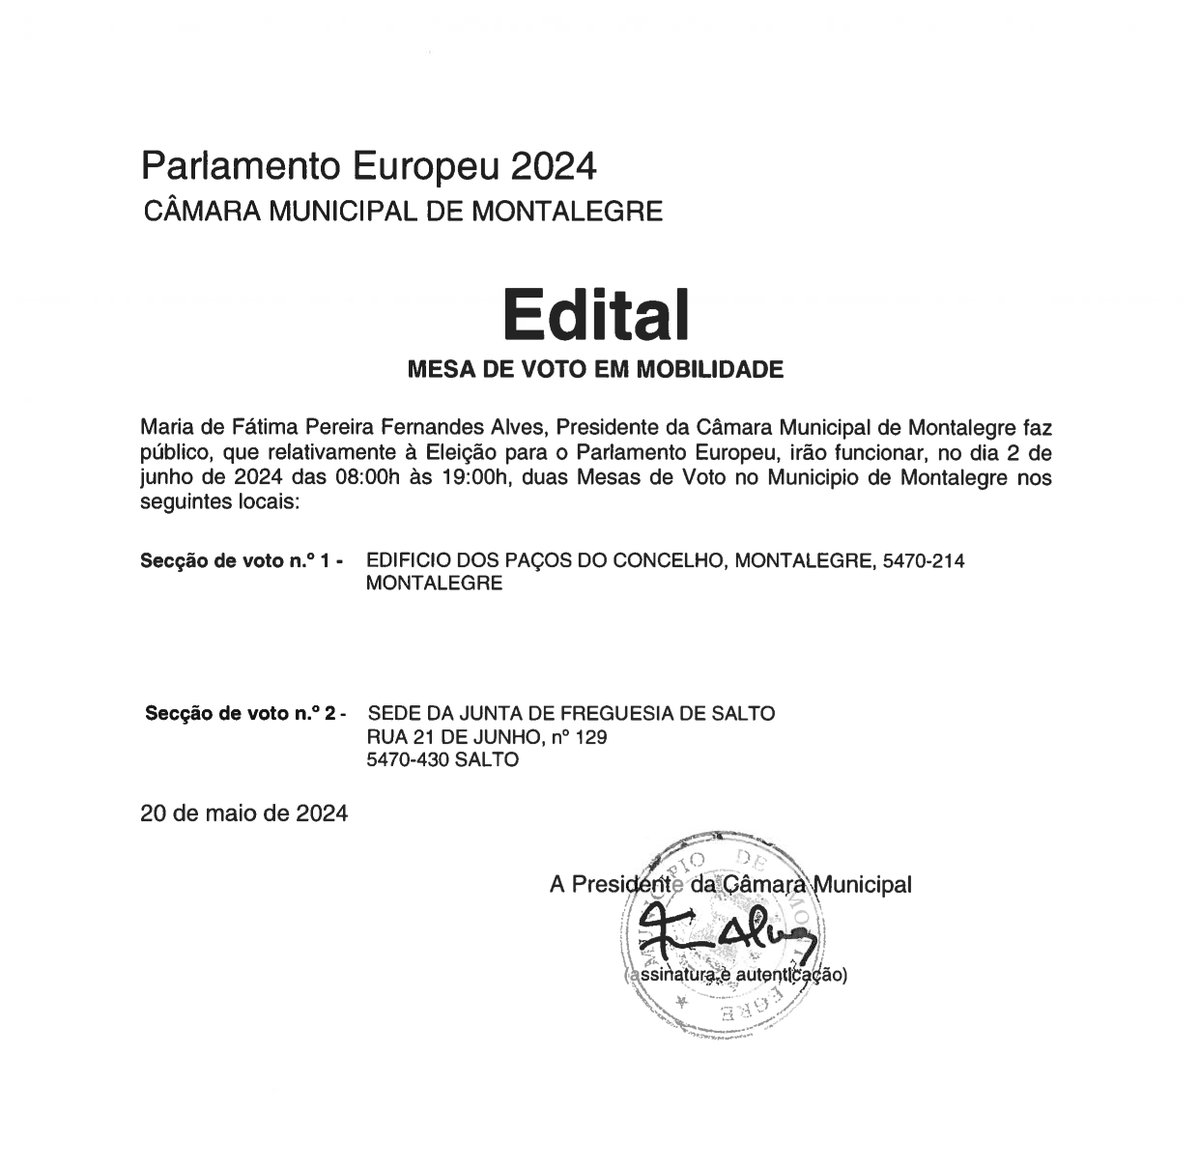 ELEIÇÕES EUROPEIAS | INFORMAÇÃO
#municipiodemontalegre #montalegre #EleicoesEuropeias2024